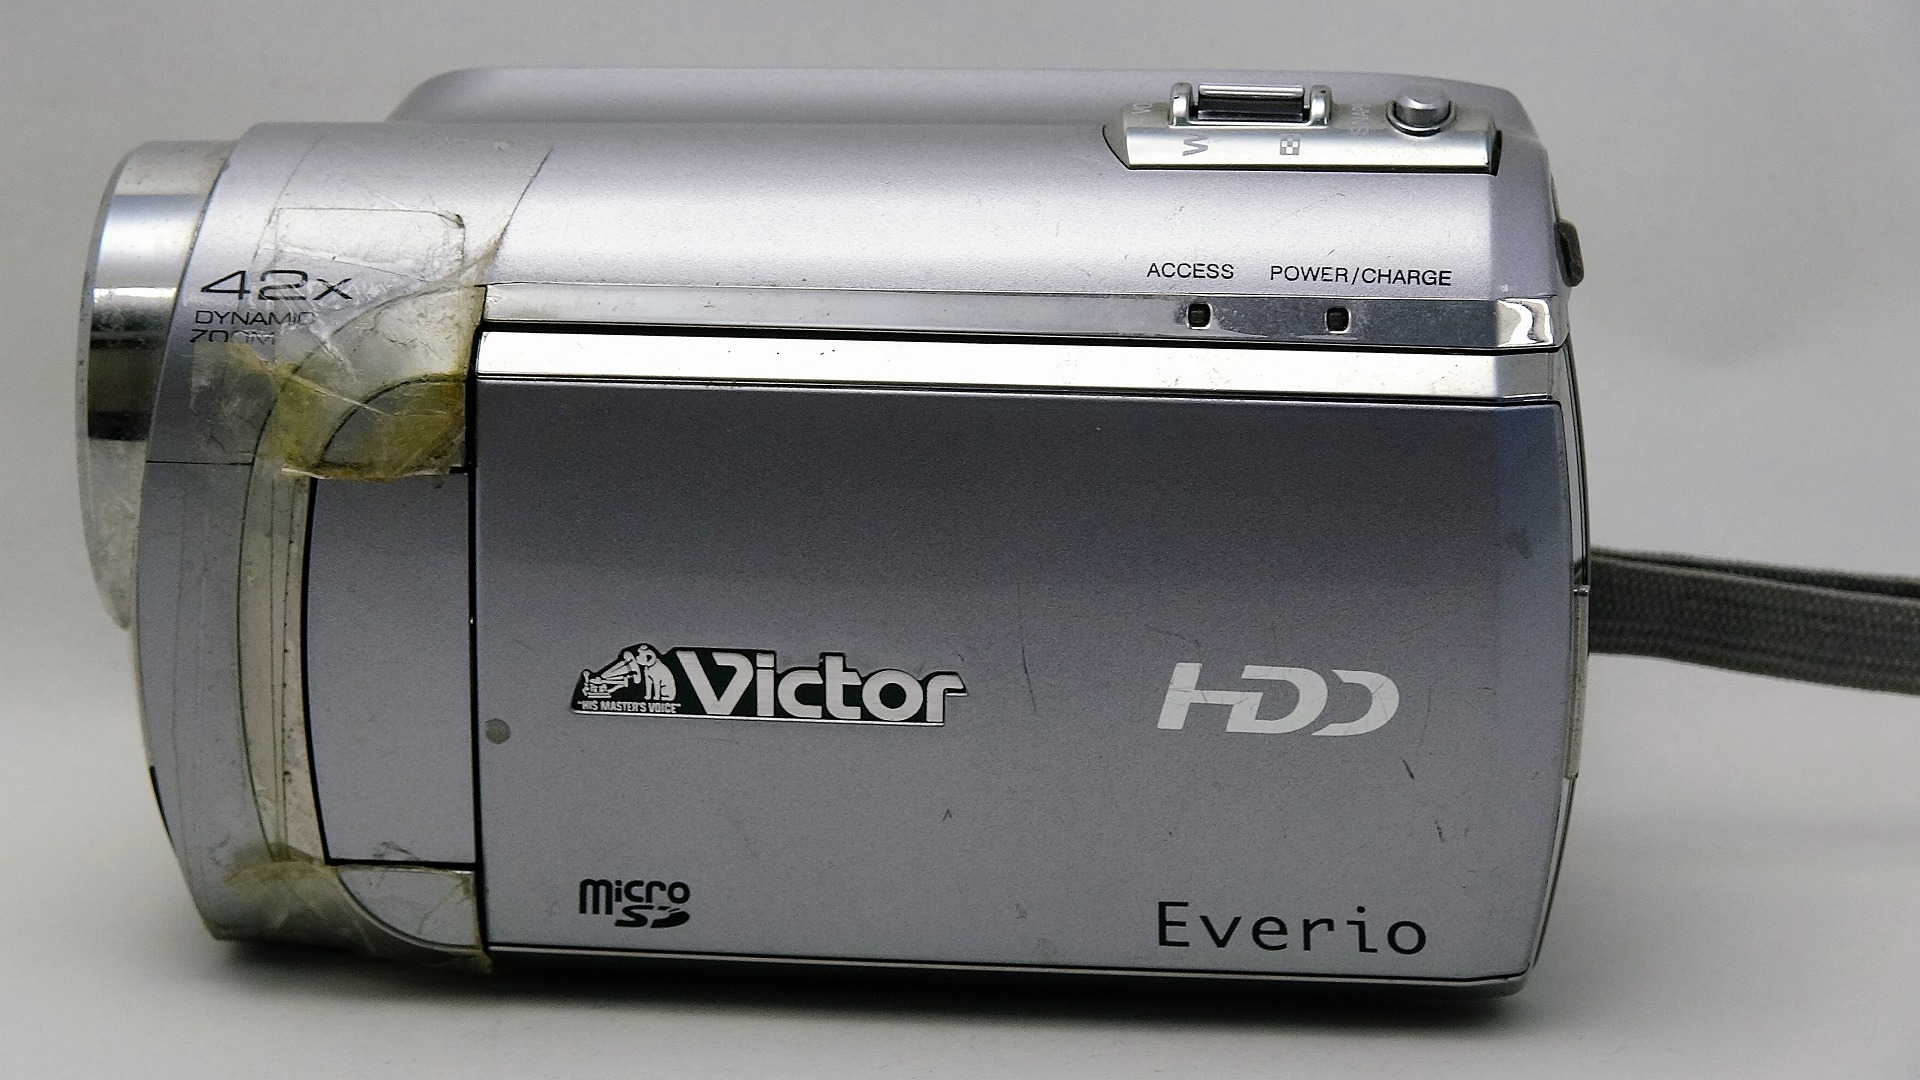 GZ-MG840-Victor-everio-故障したビデオカメラからデータ取り出し